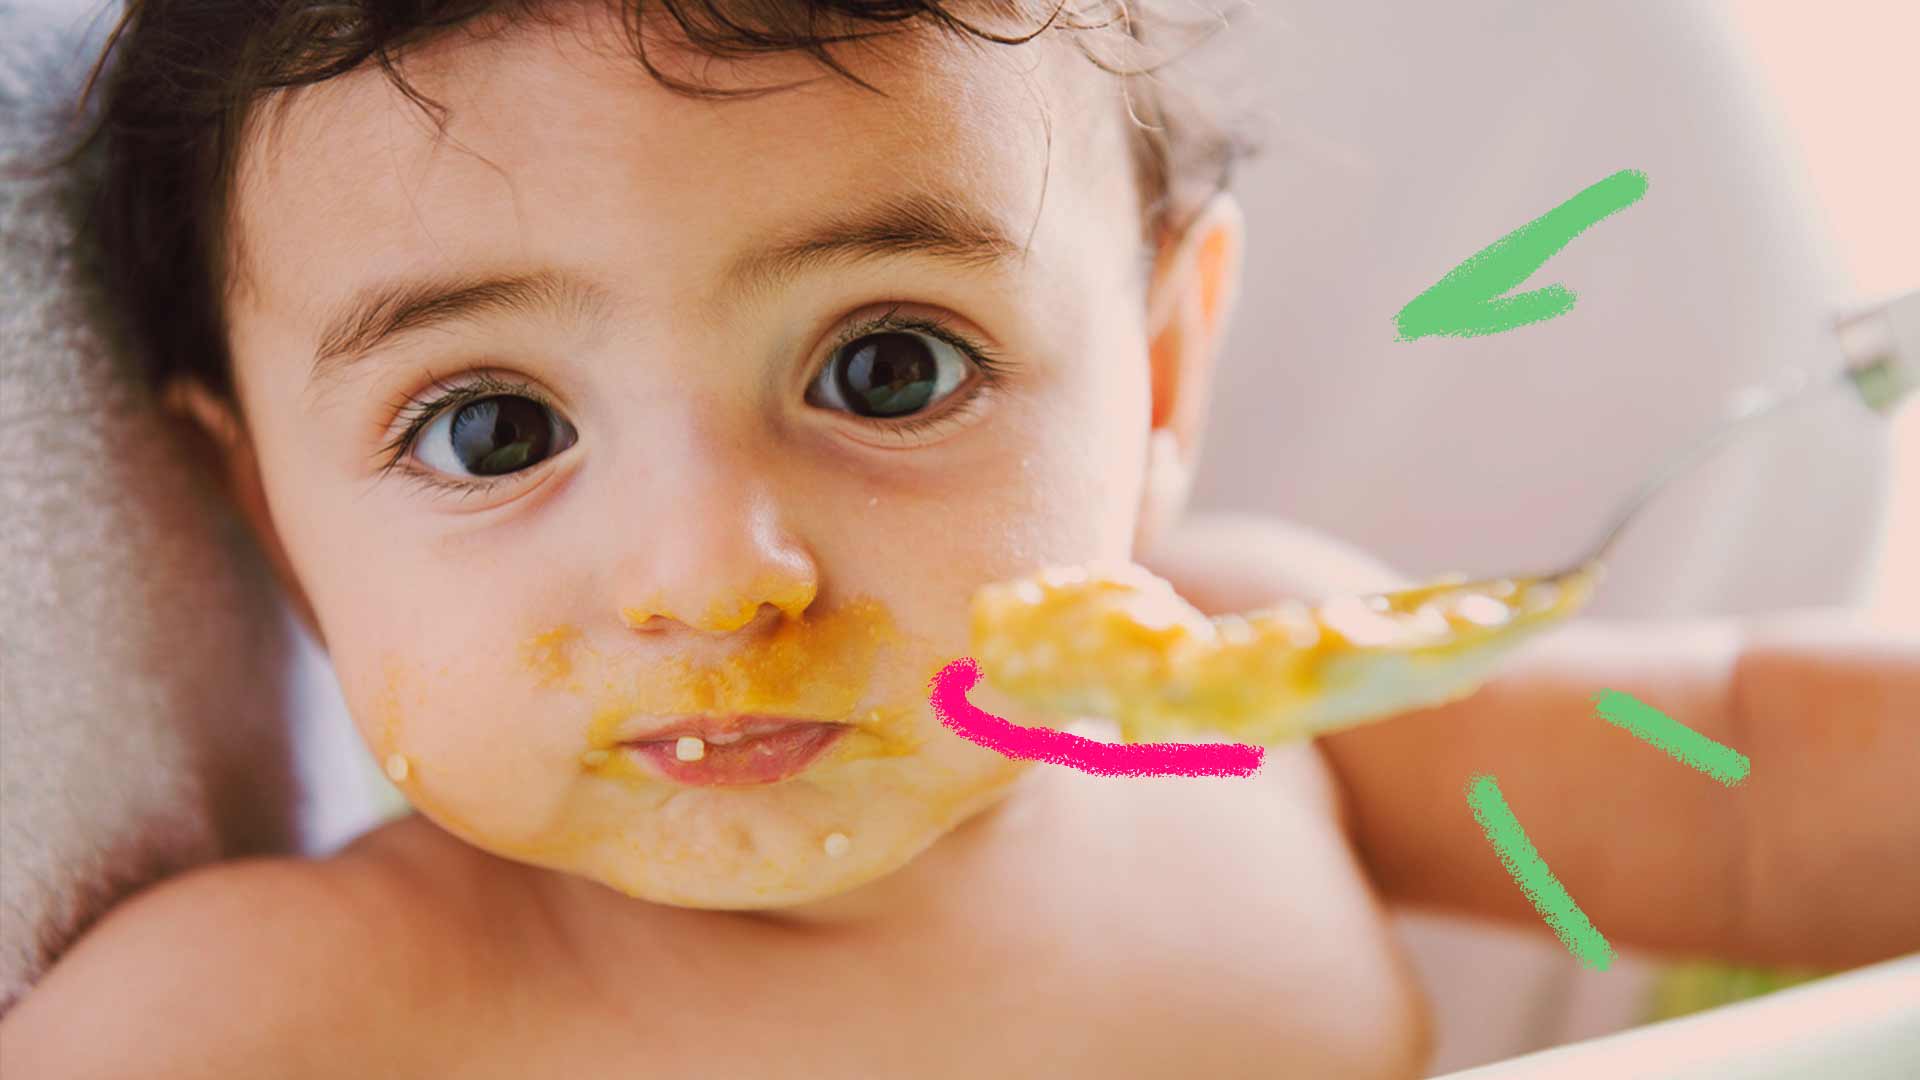 Imagem de um bebê comendo sua papinha com a boca suja. Seus olhos estão concentrados.